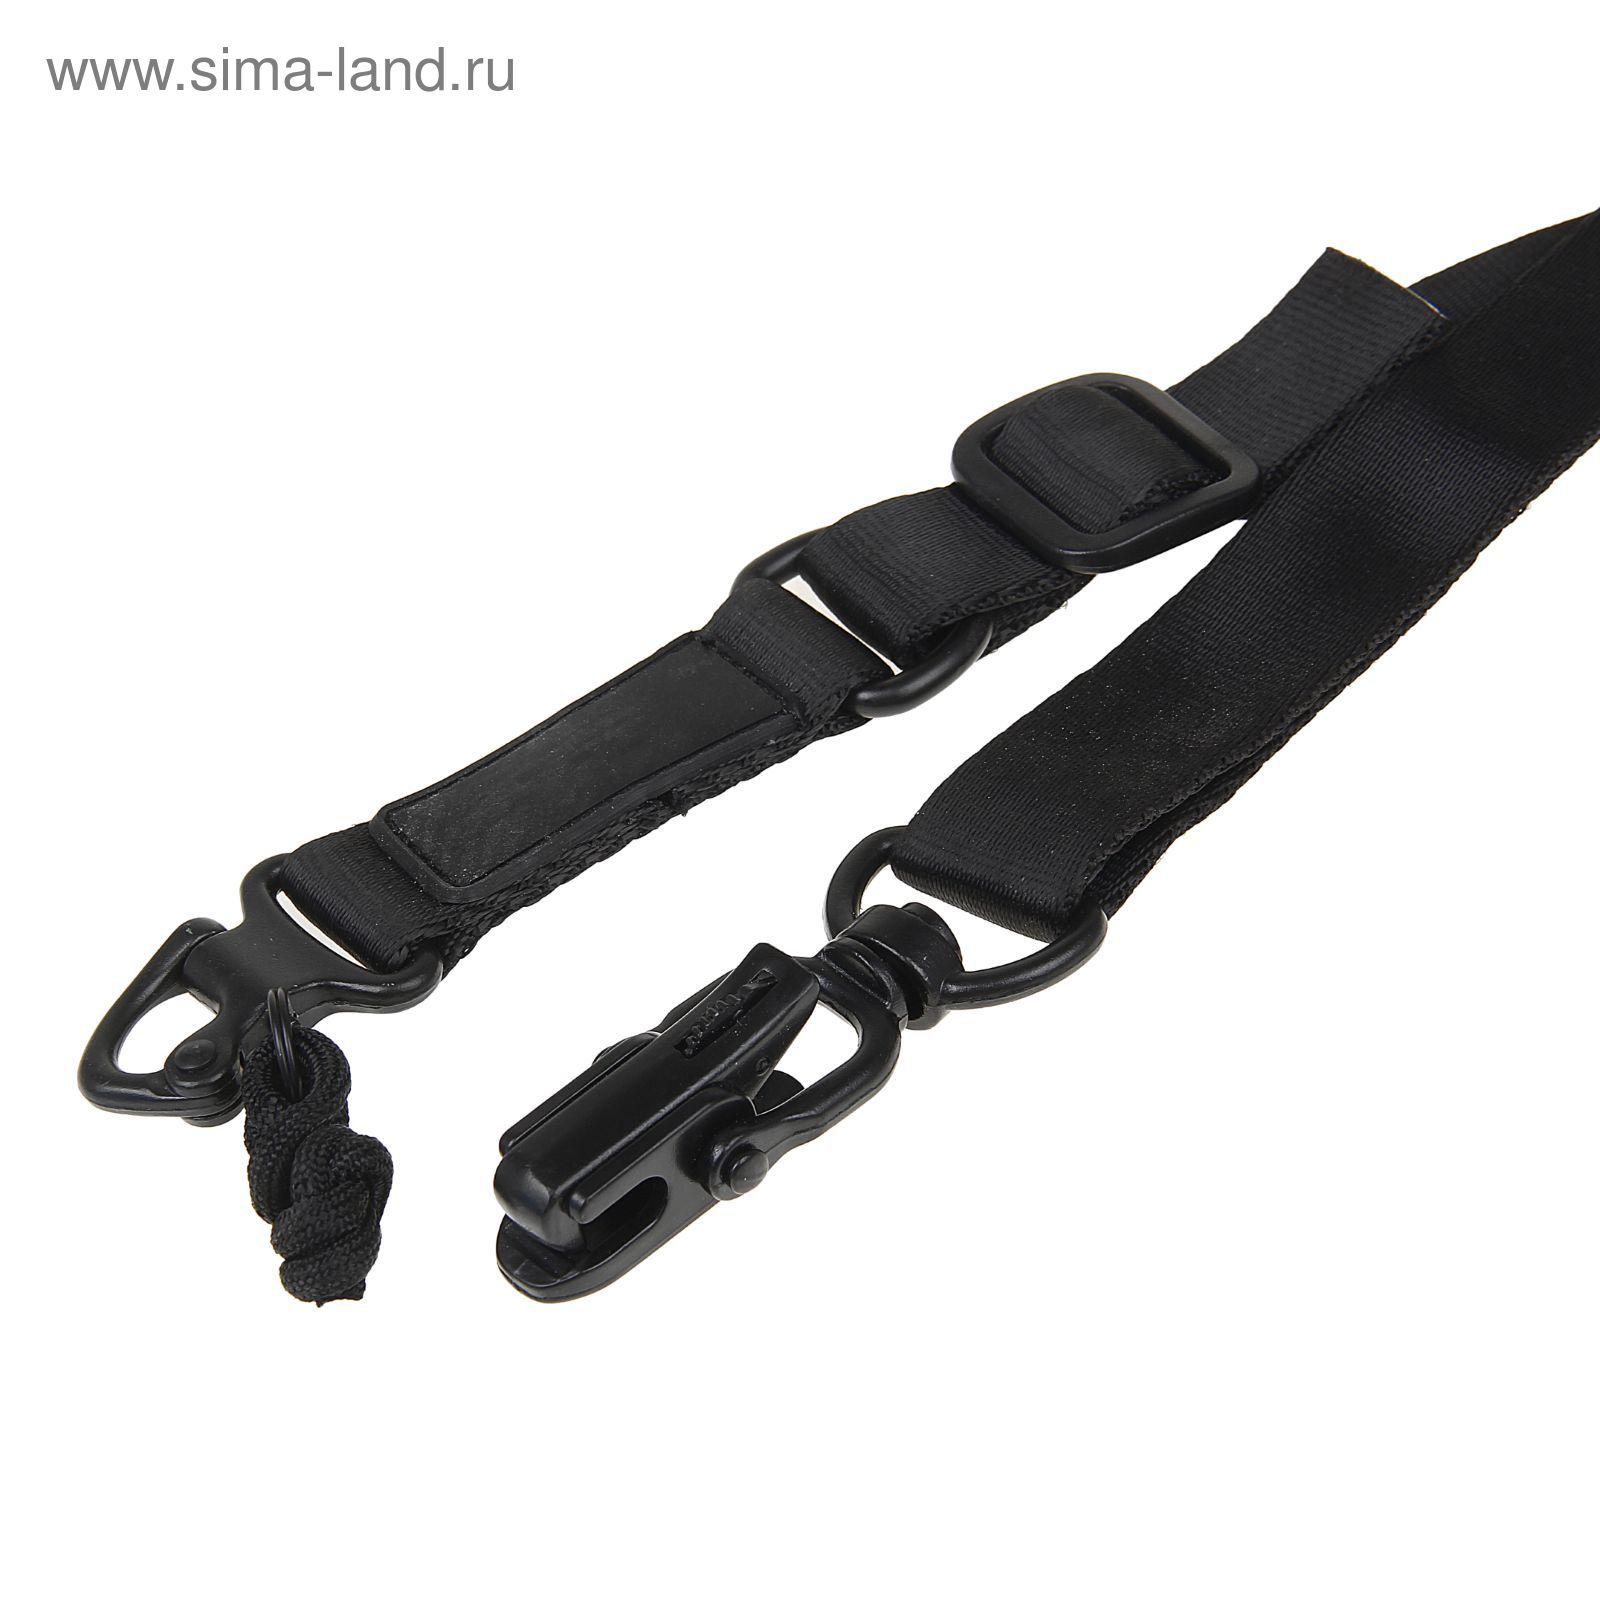 Ремень оружейный MS2 sling(without logo) SL-23-BK